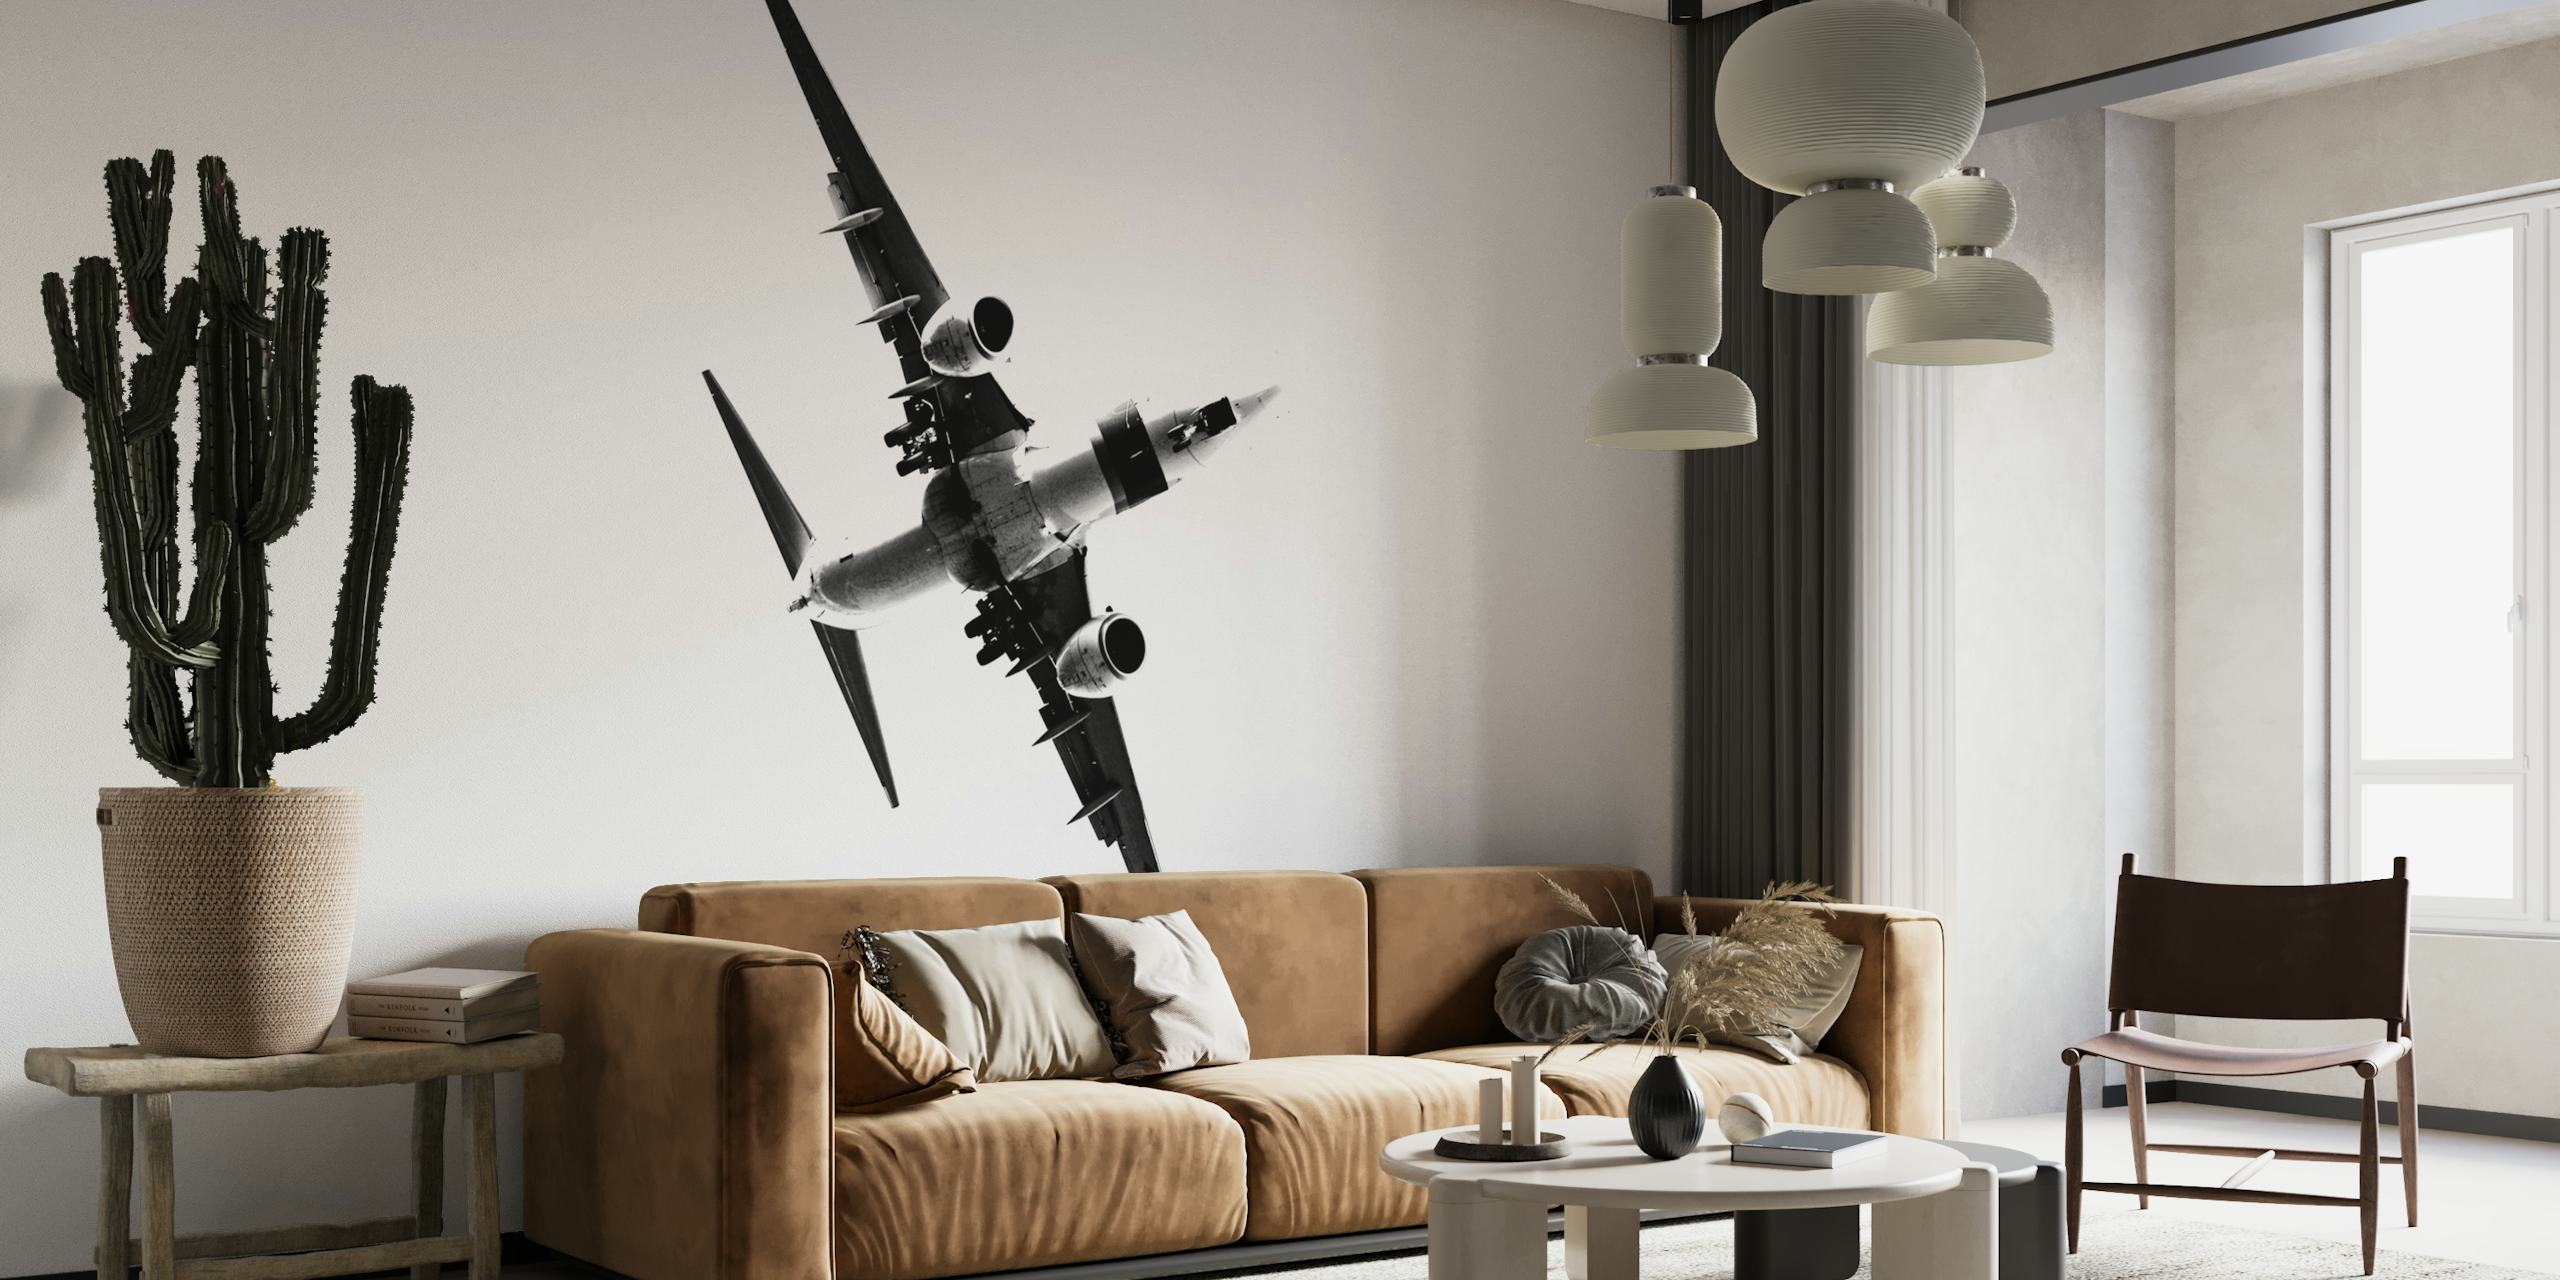 Svart-hvitt veggmaleri av et stilisert fly som stiger opp som symboliserer fremgang og ambisjoner